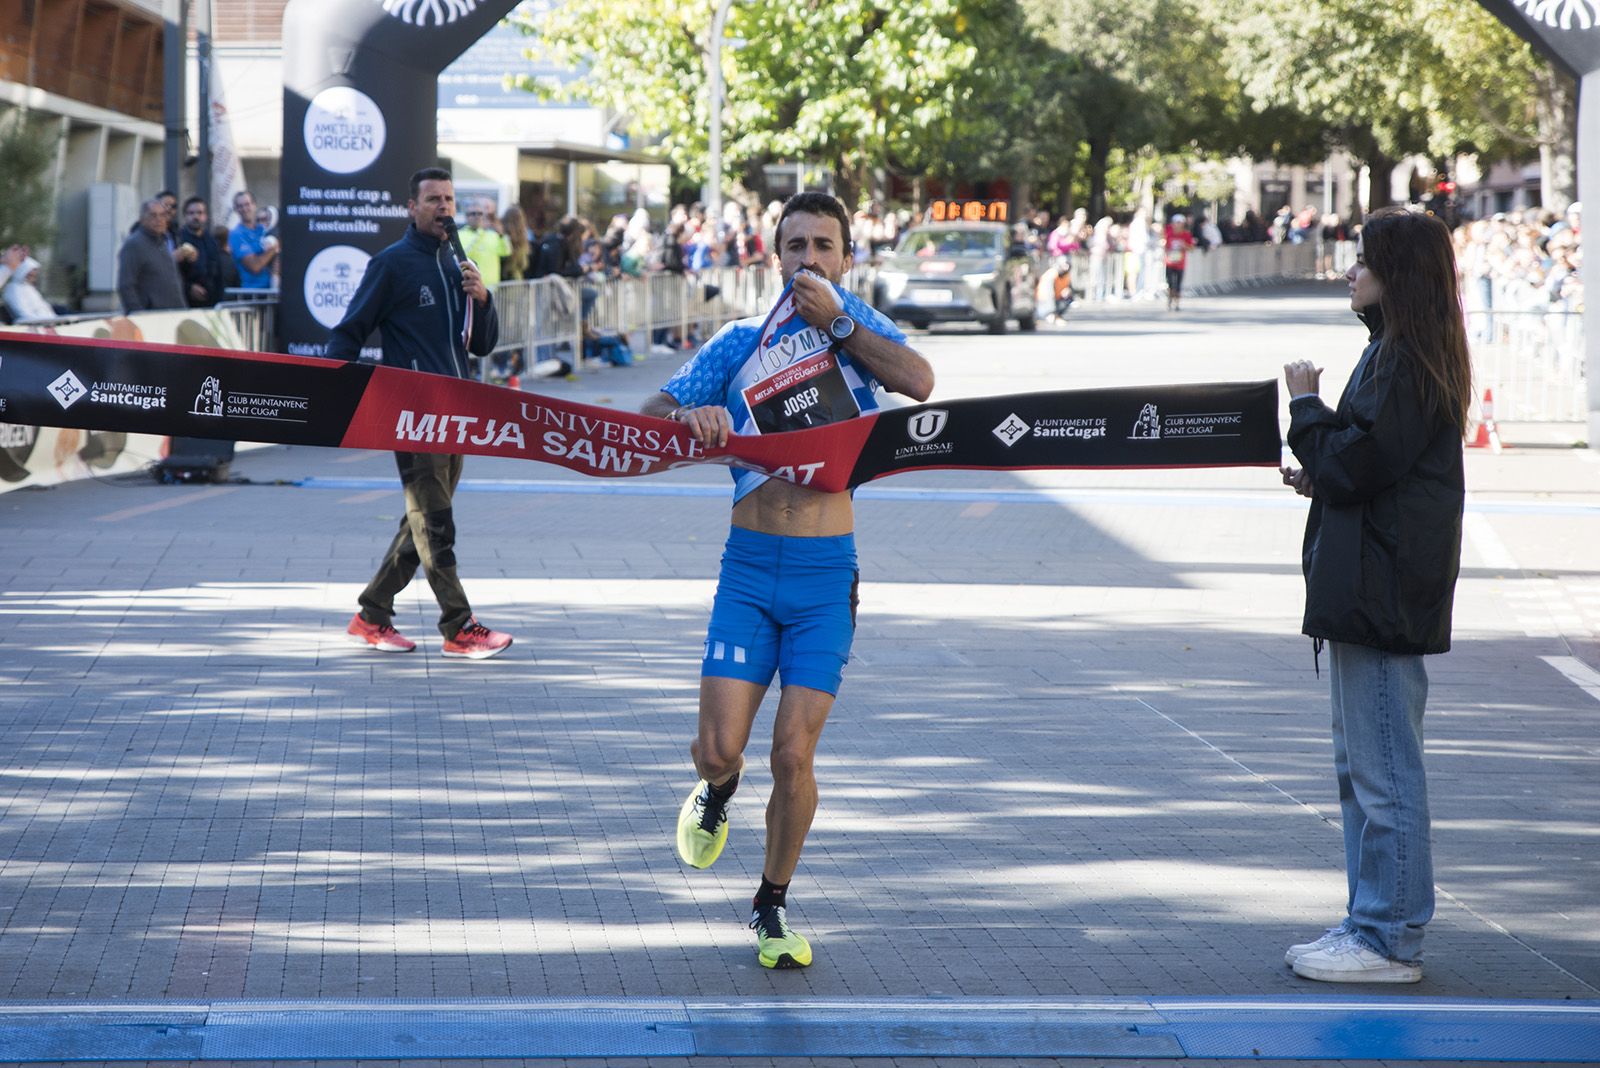 El santcugatenc Pepe Díaz va guanyar la 37a Mitja Marató de Sant Cugat. FOTO: Bernat Millet